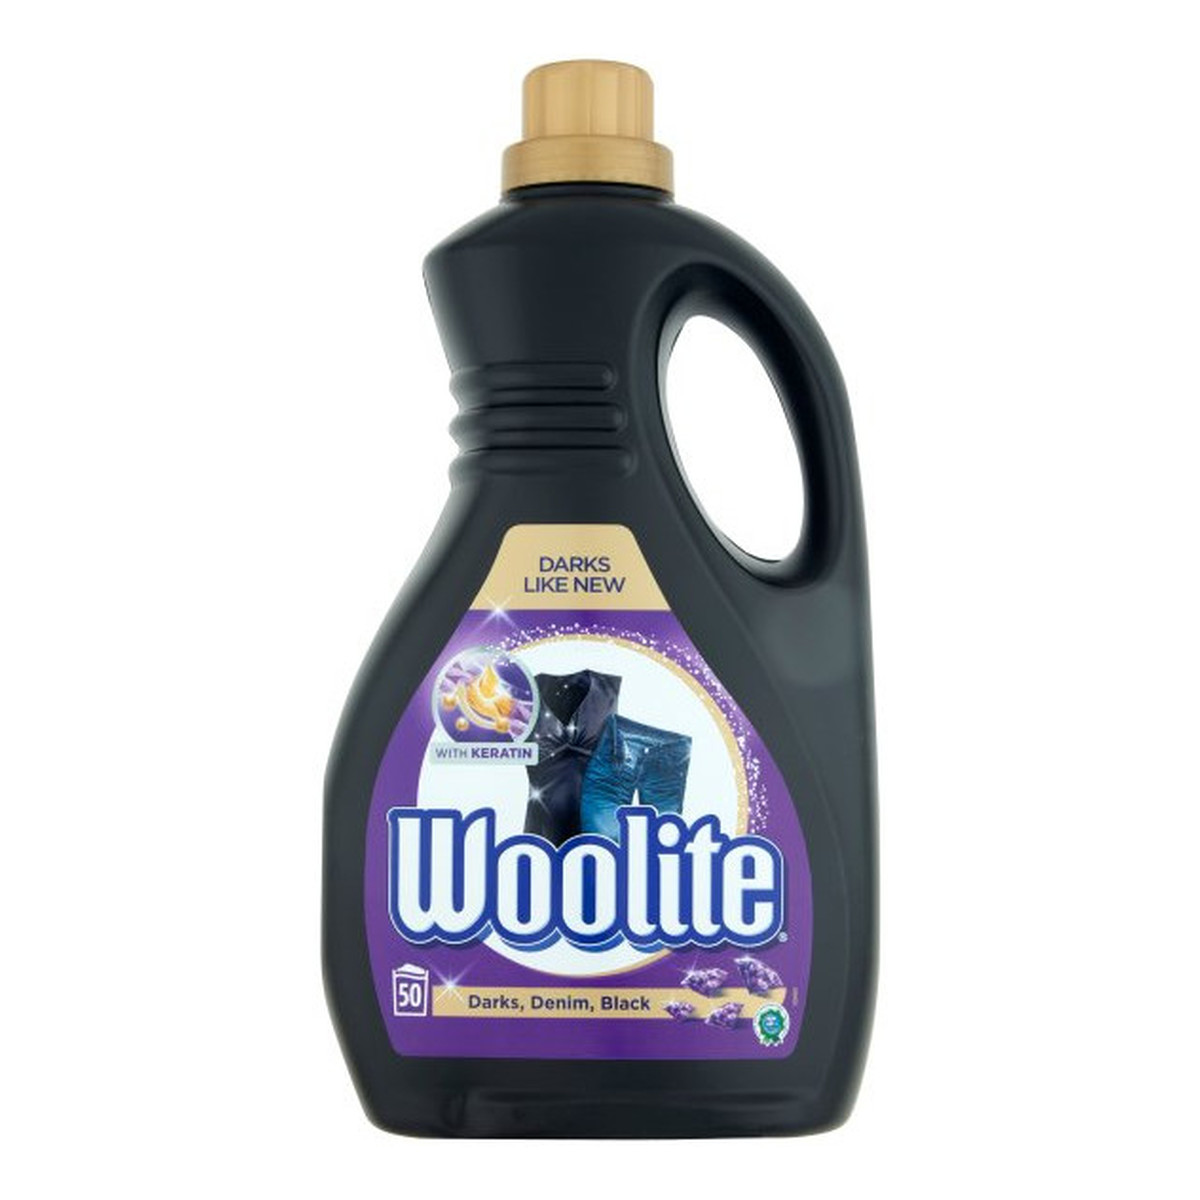 Woolite Darks płyn do prania ochrona ciemnych kolorów z keratyną 3000ml